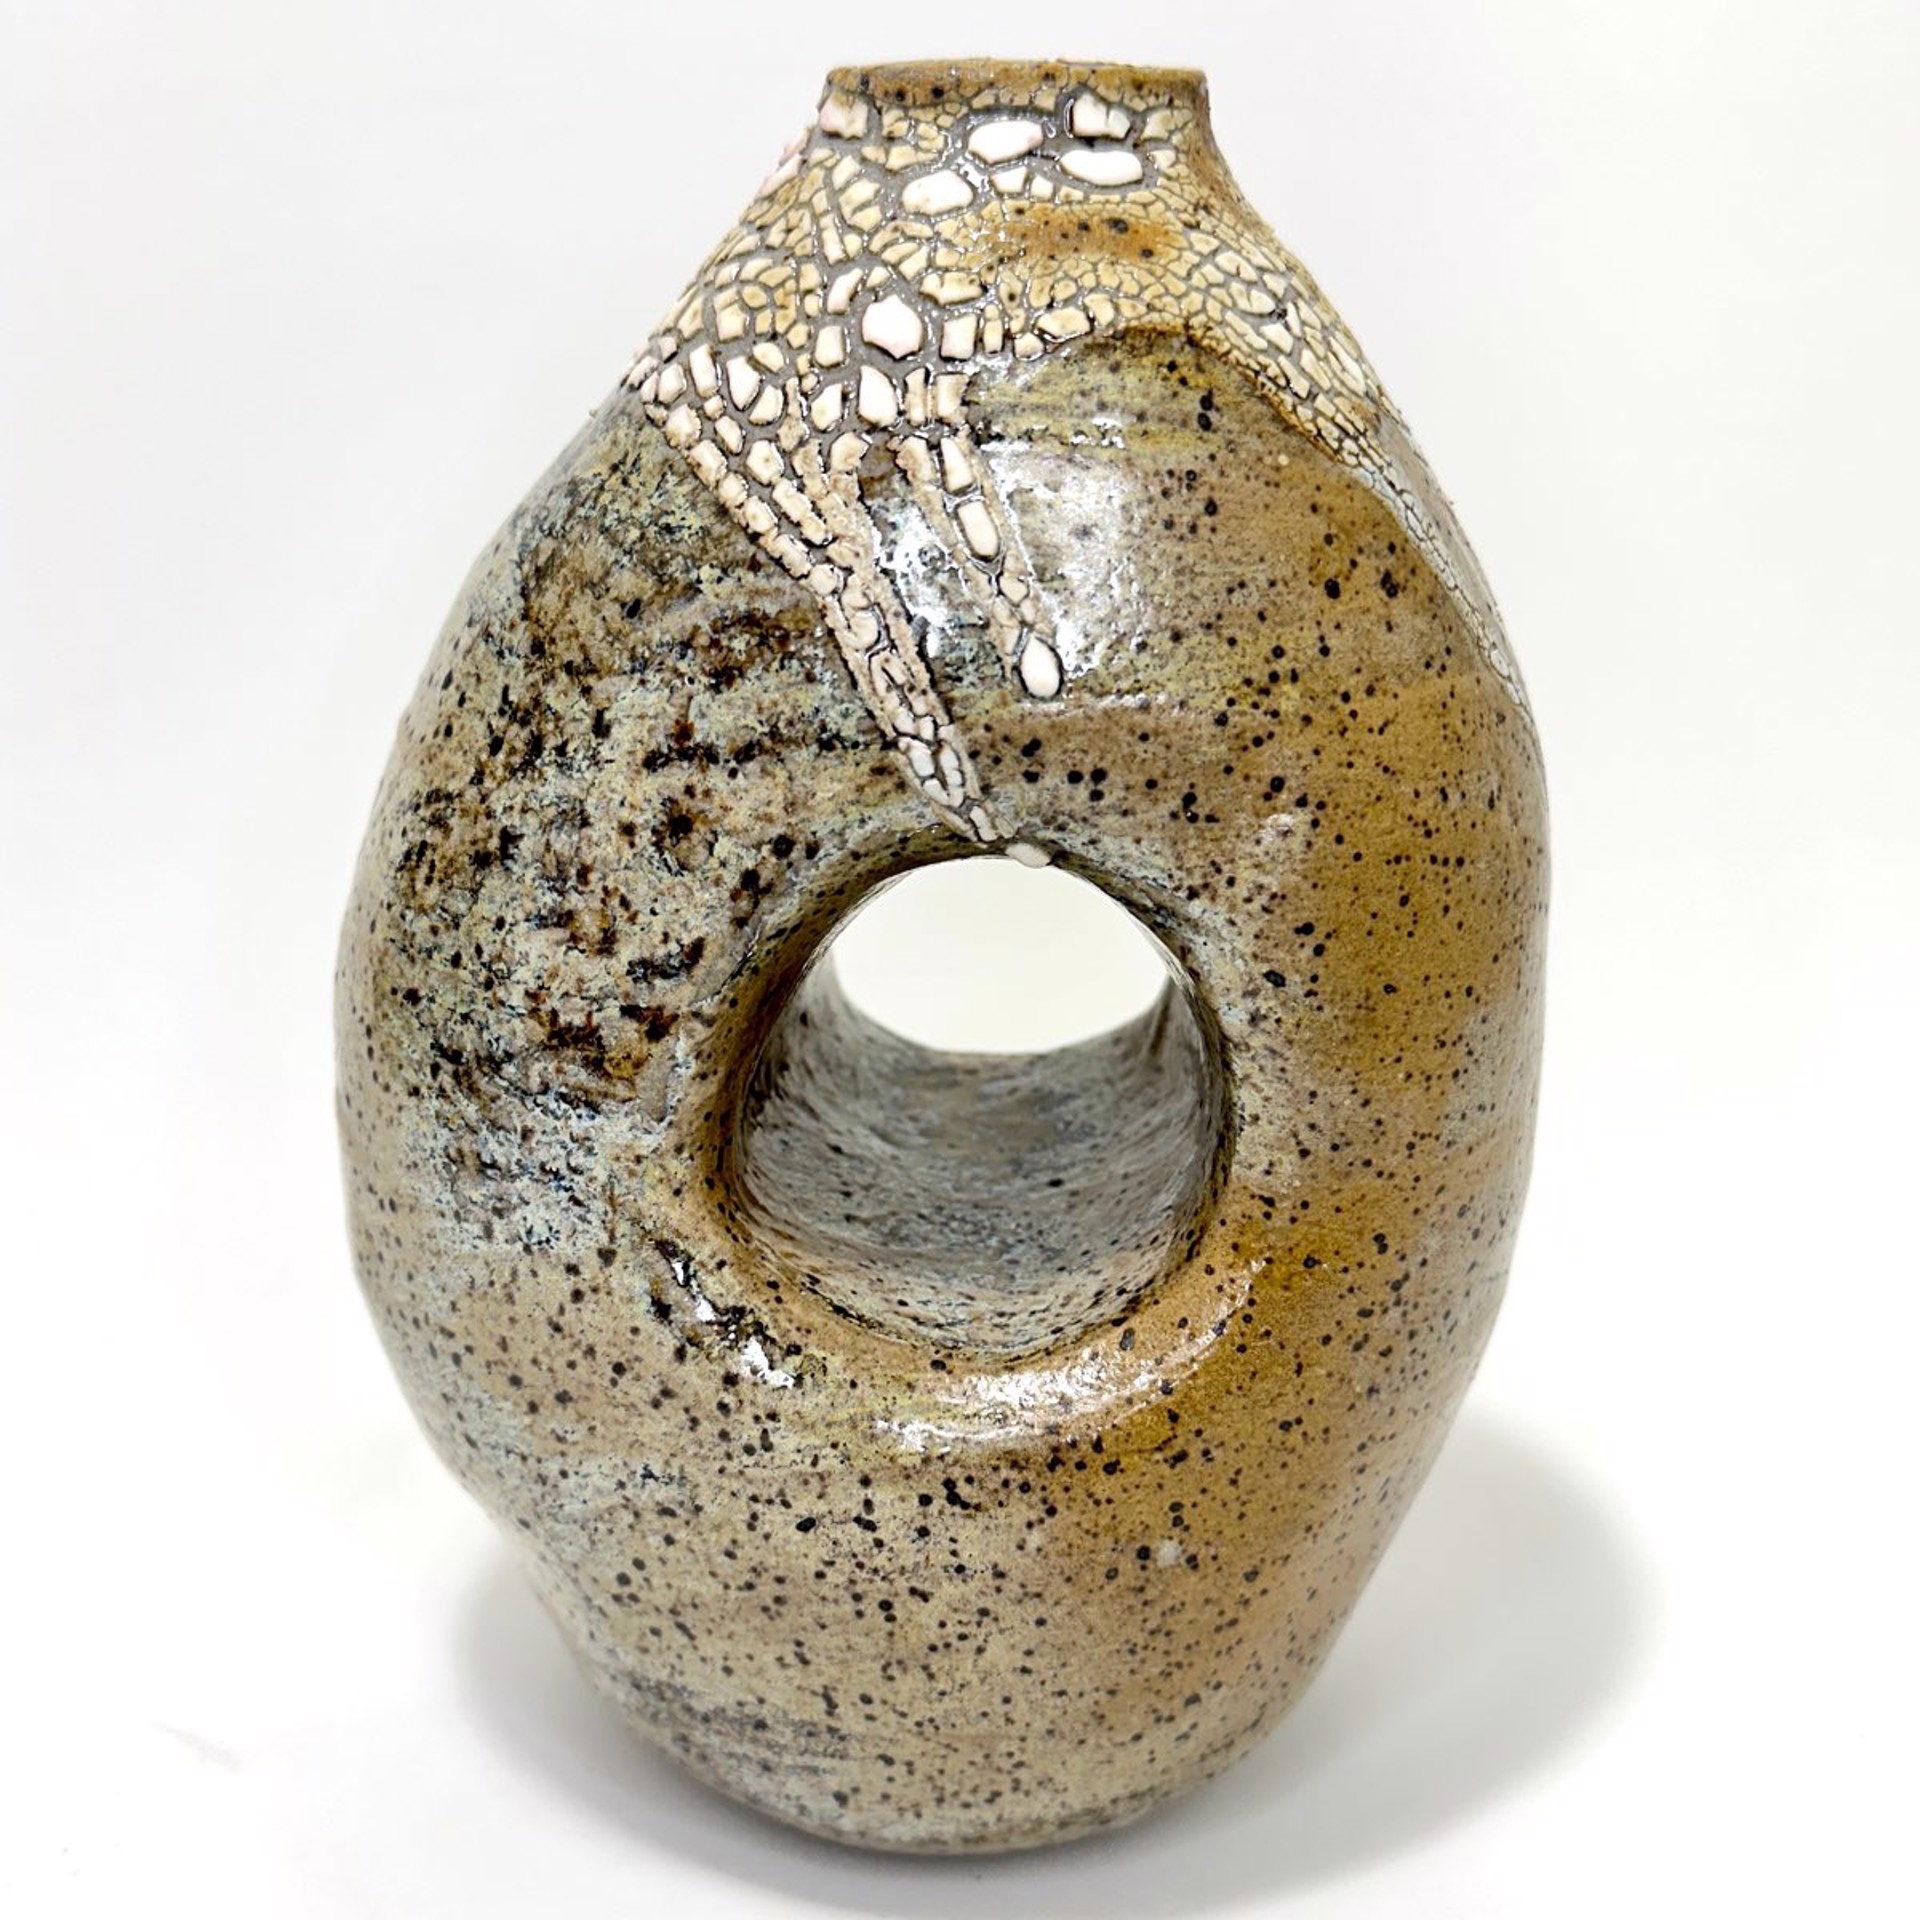 Lacuna Pot With Lichen 1 by Mary Delmege